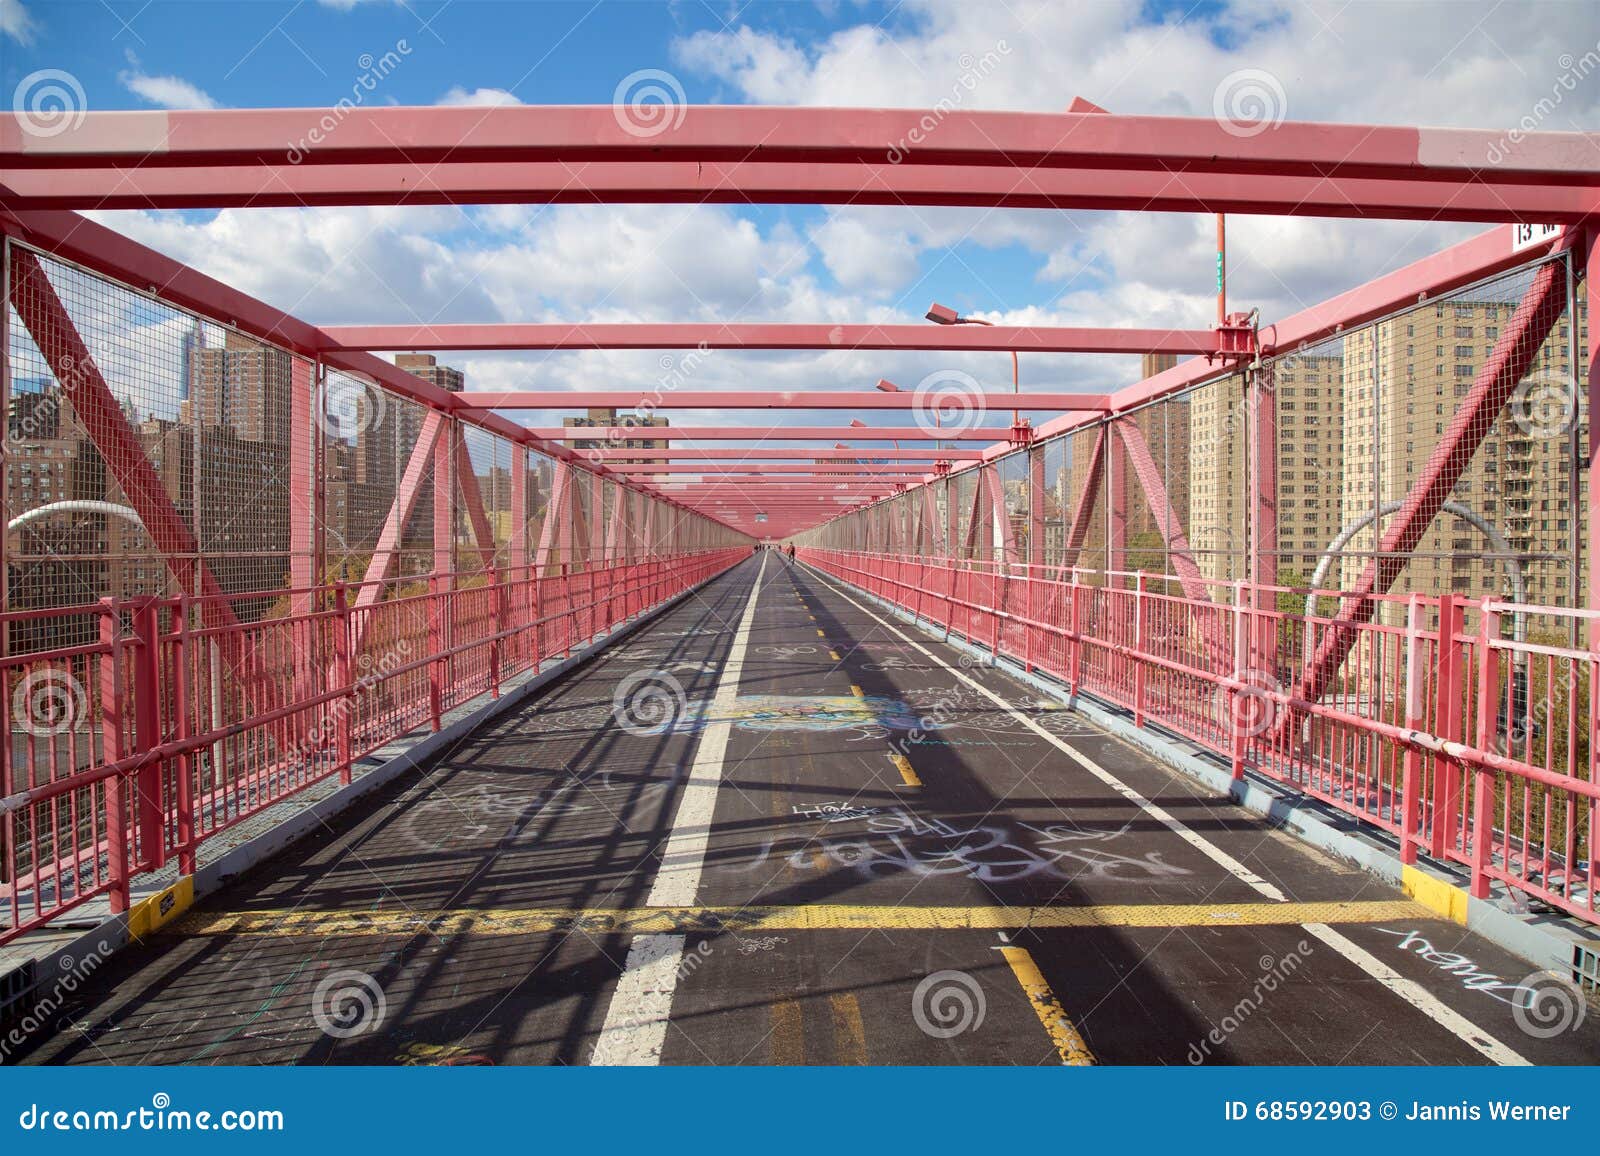 Williamsburg mosta przejście. Na przejściu Williamsburg most w Nowy Jork, NY, usa